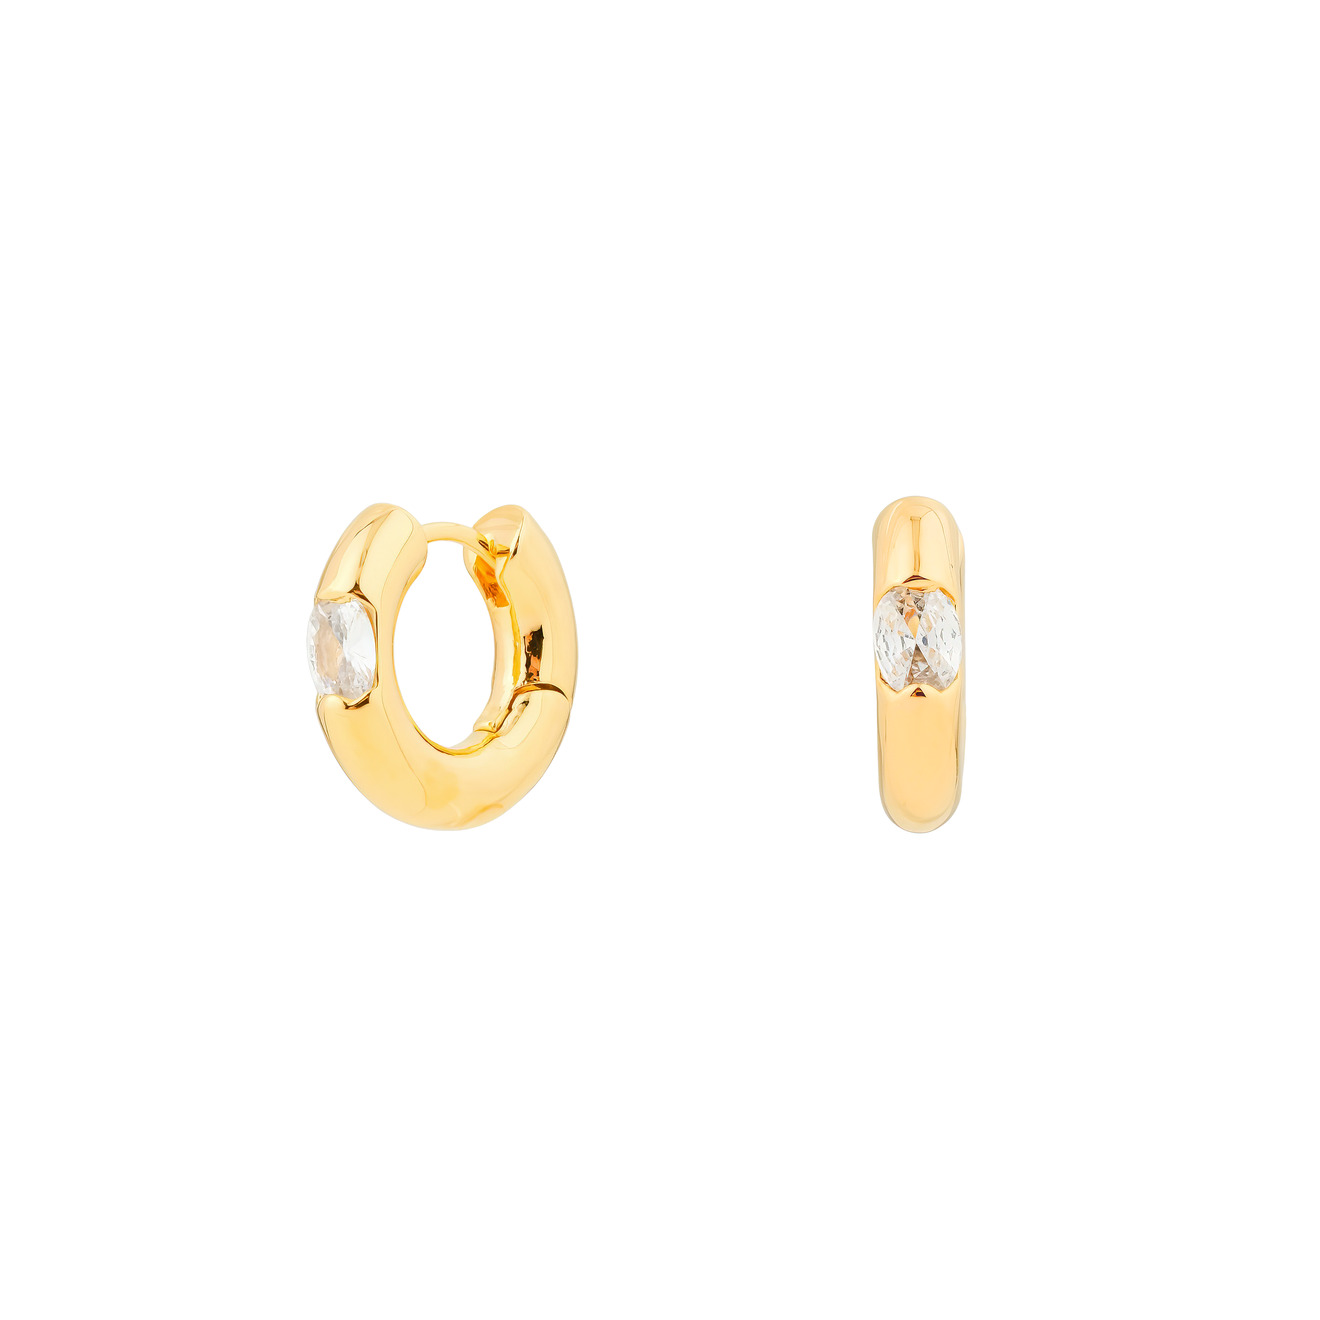 Herald Percy Золотистые дутые серьги-кольца с овальными кристаллами цена и фото